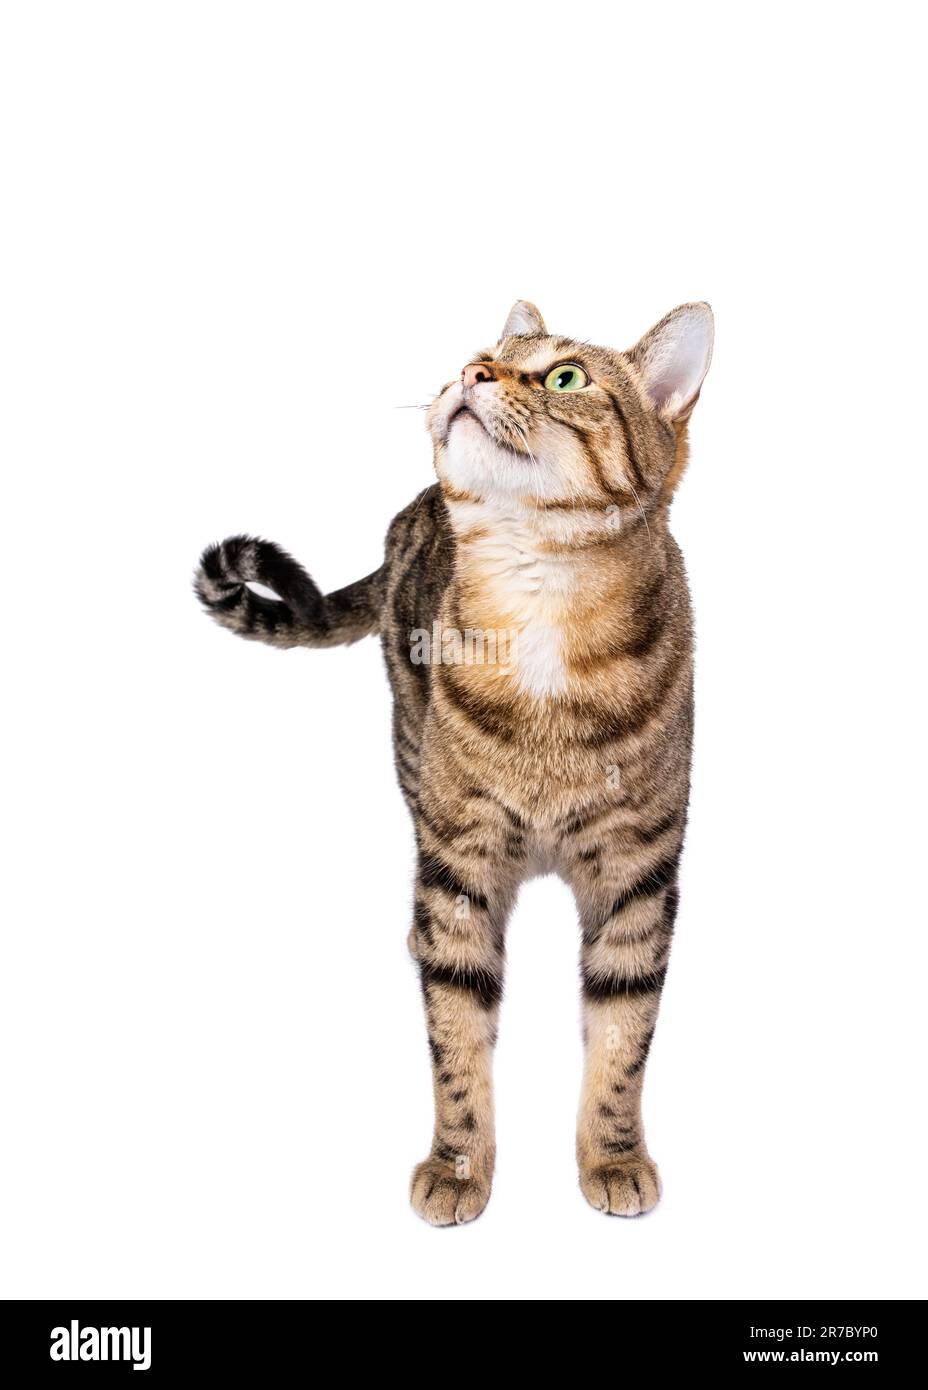 Lindo gato tabby adulto de pie y mirando hacia arriba. Aislado en blanco Foto de stock